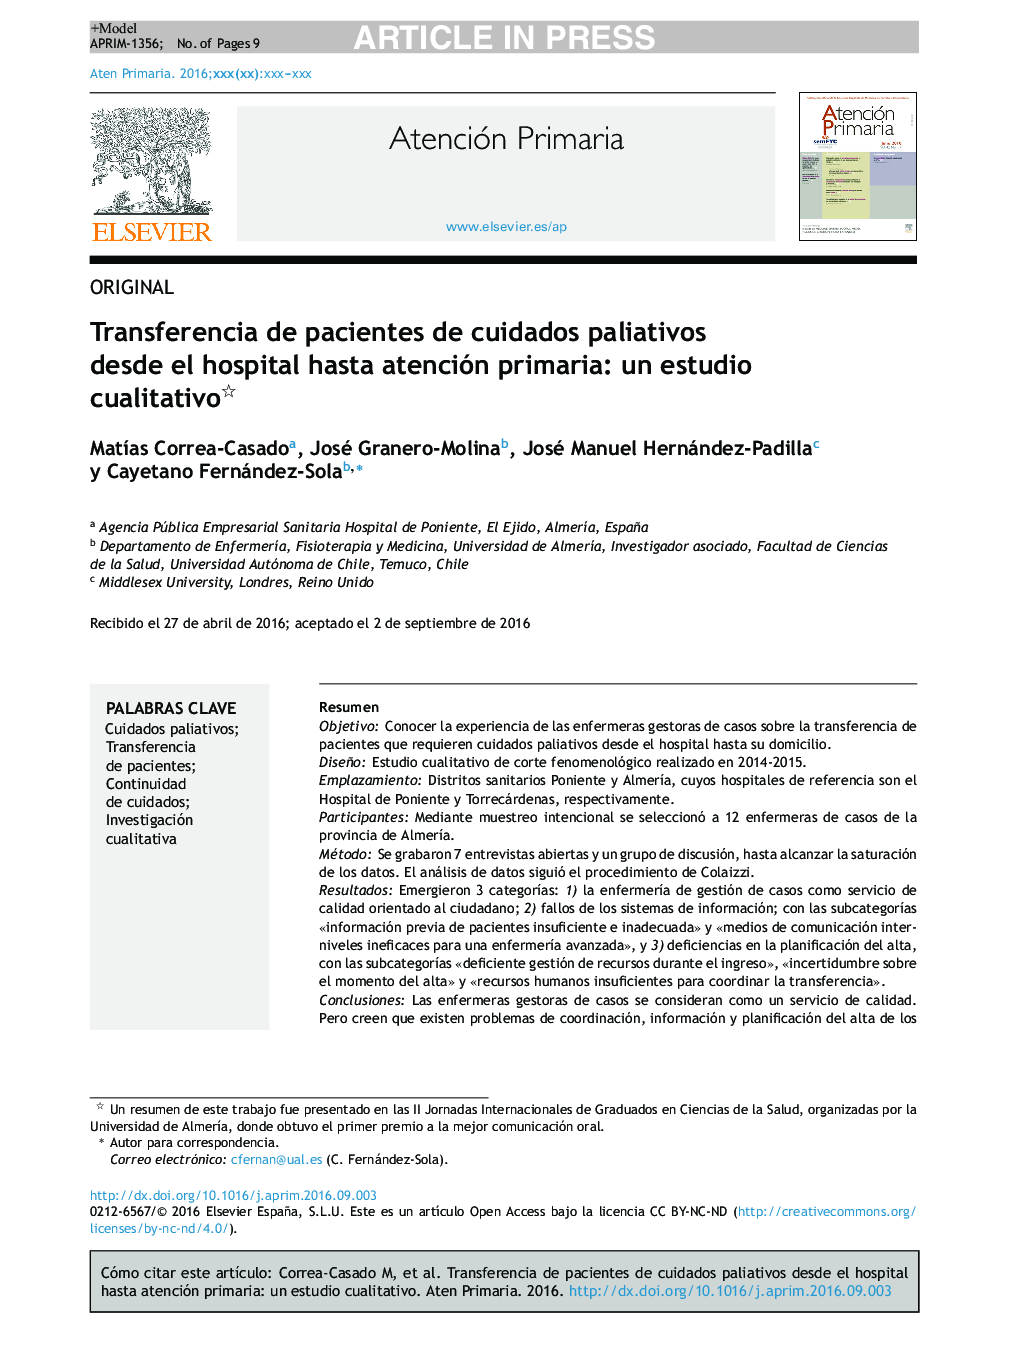 Transferencia de pacientes de cuidados paliativos desde el hospital hasta atención primaria: un estudio cualitativo